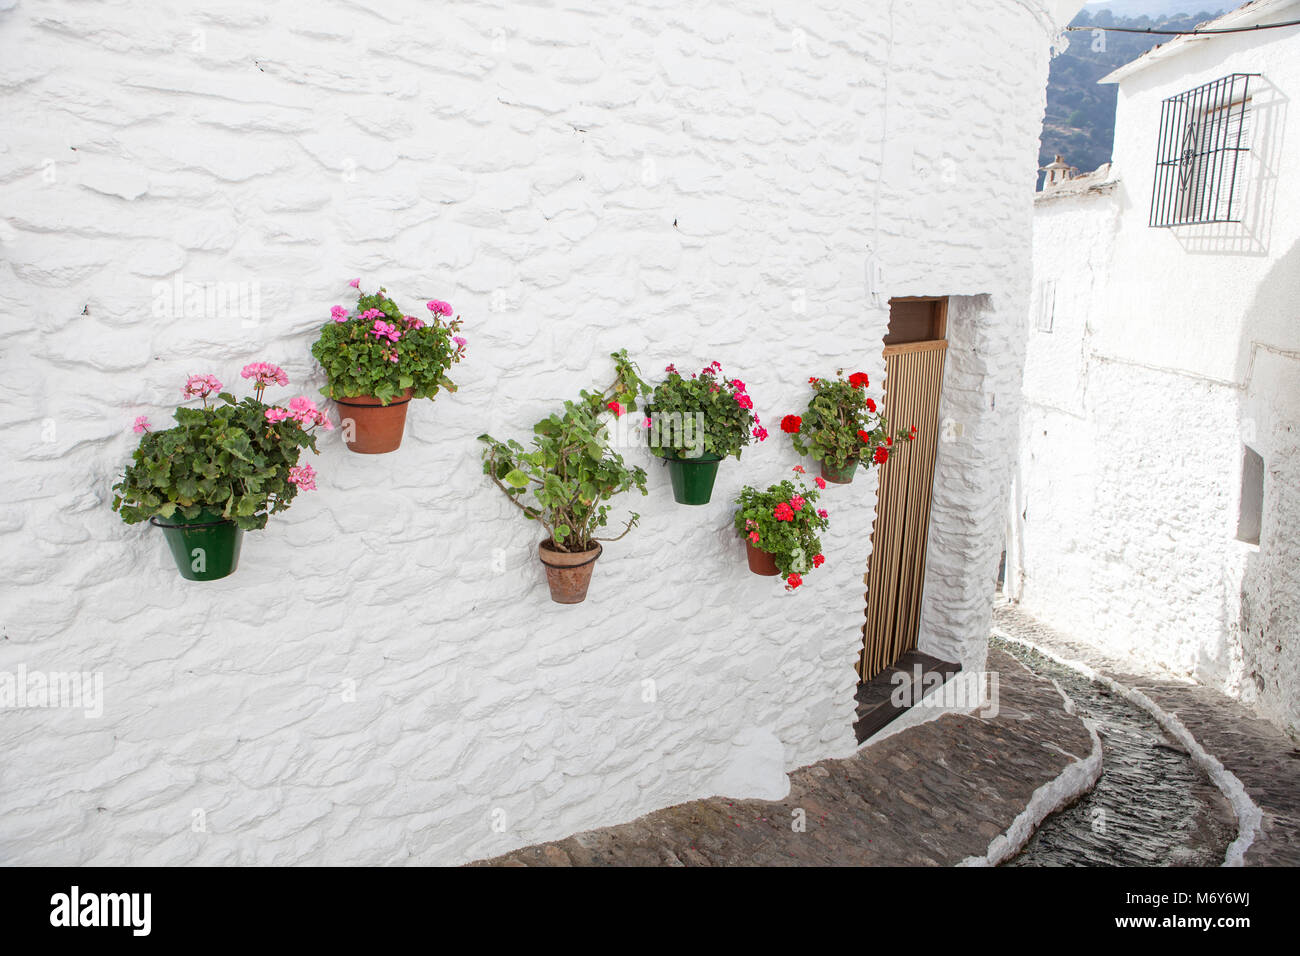 Belle rue tranquille avec de l'eau et de pots de canal dans le mur, Alpujarras, Granada, Espagne Banque D'Images